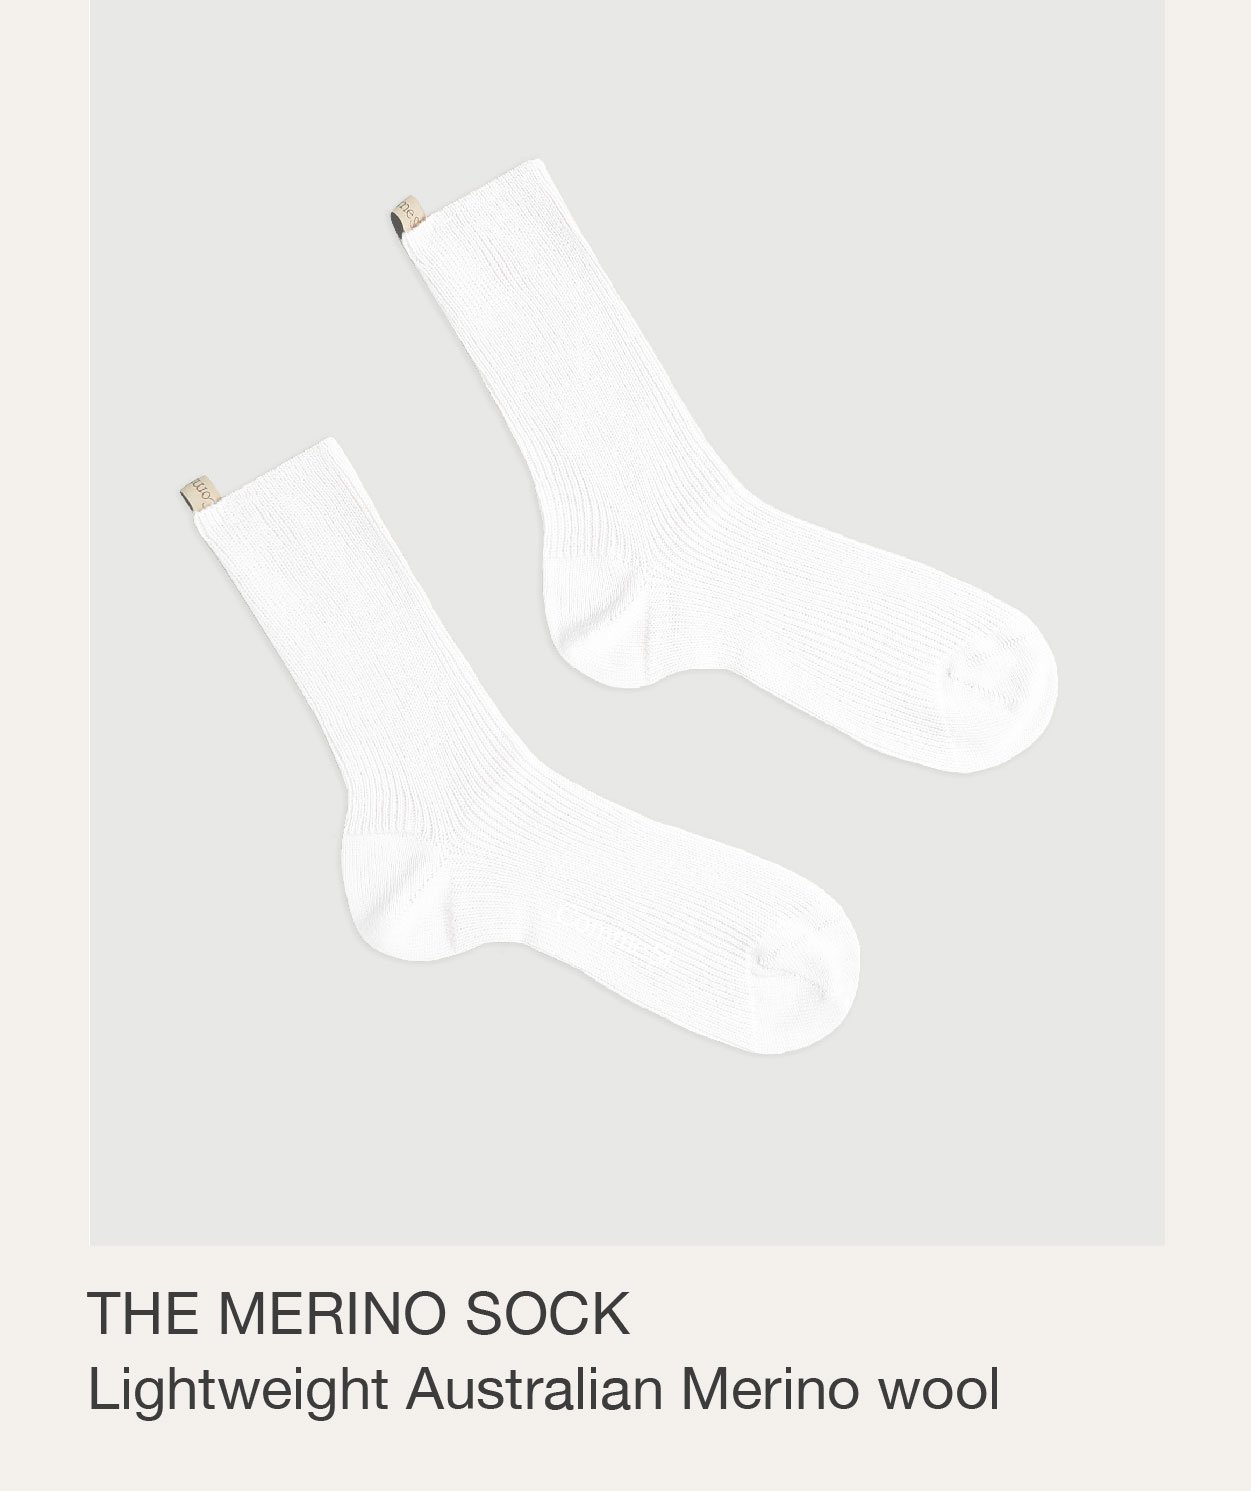 The Merino Sock. Lightweight Australian Merino Wool